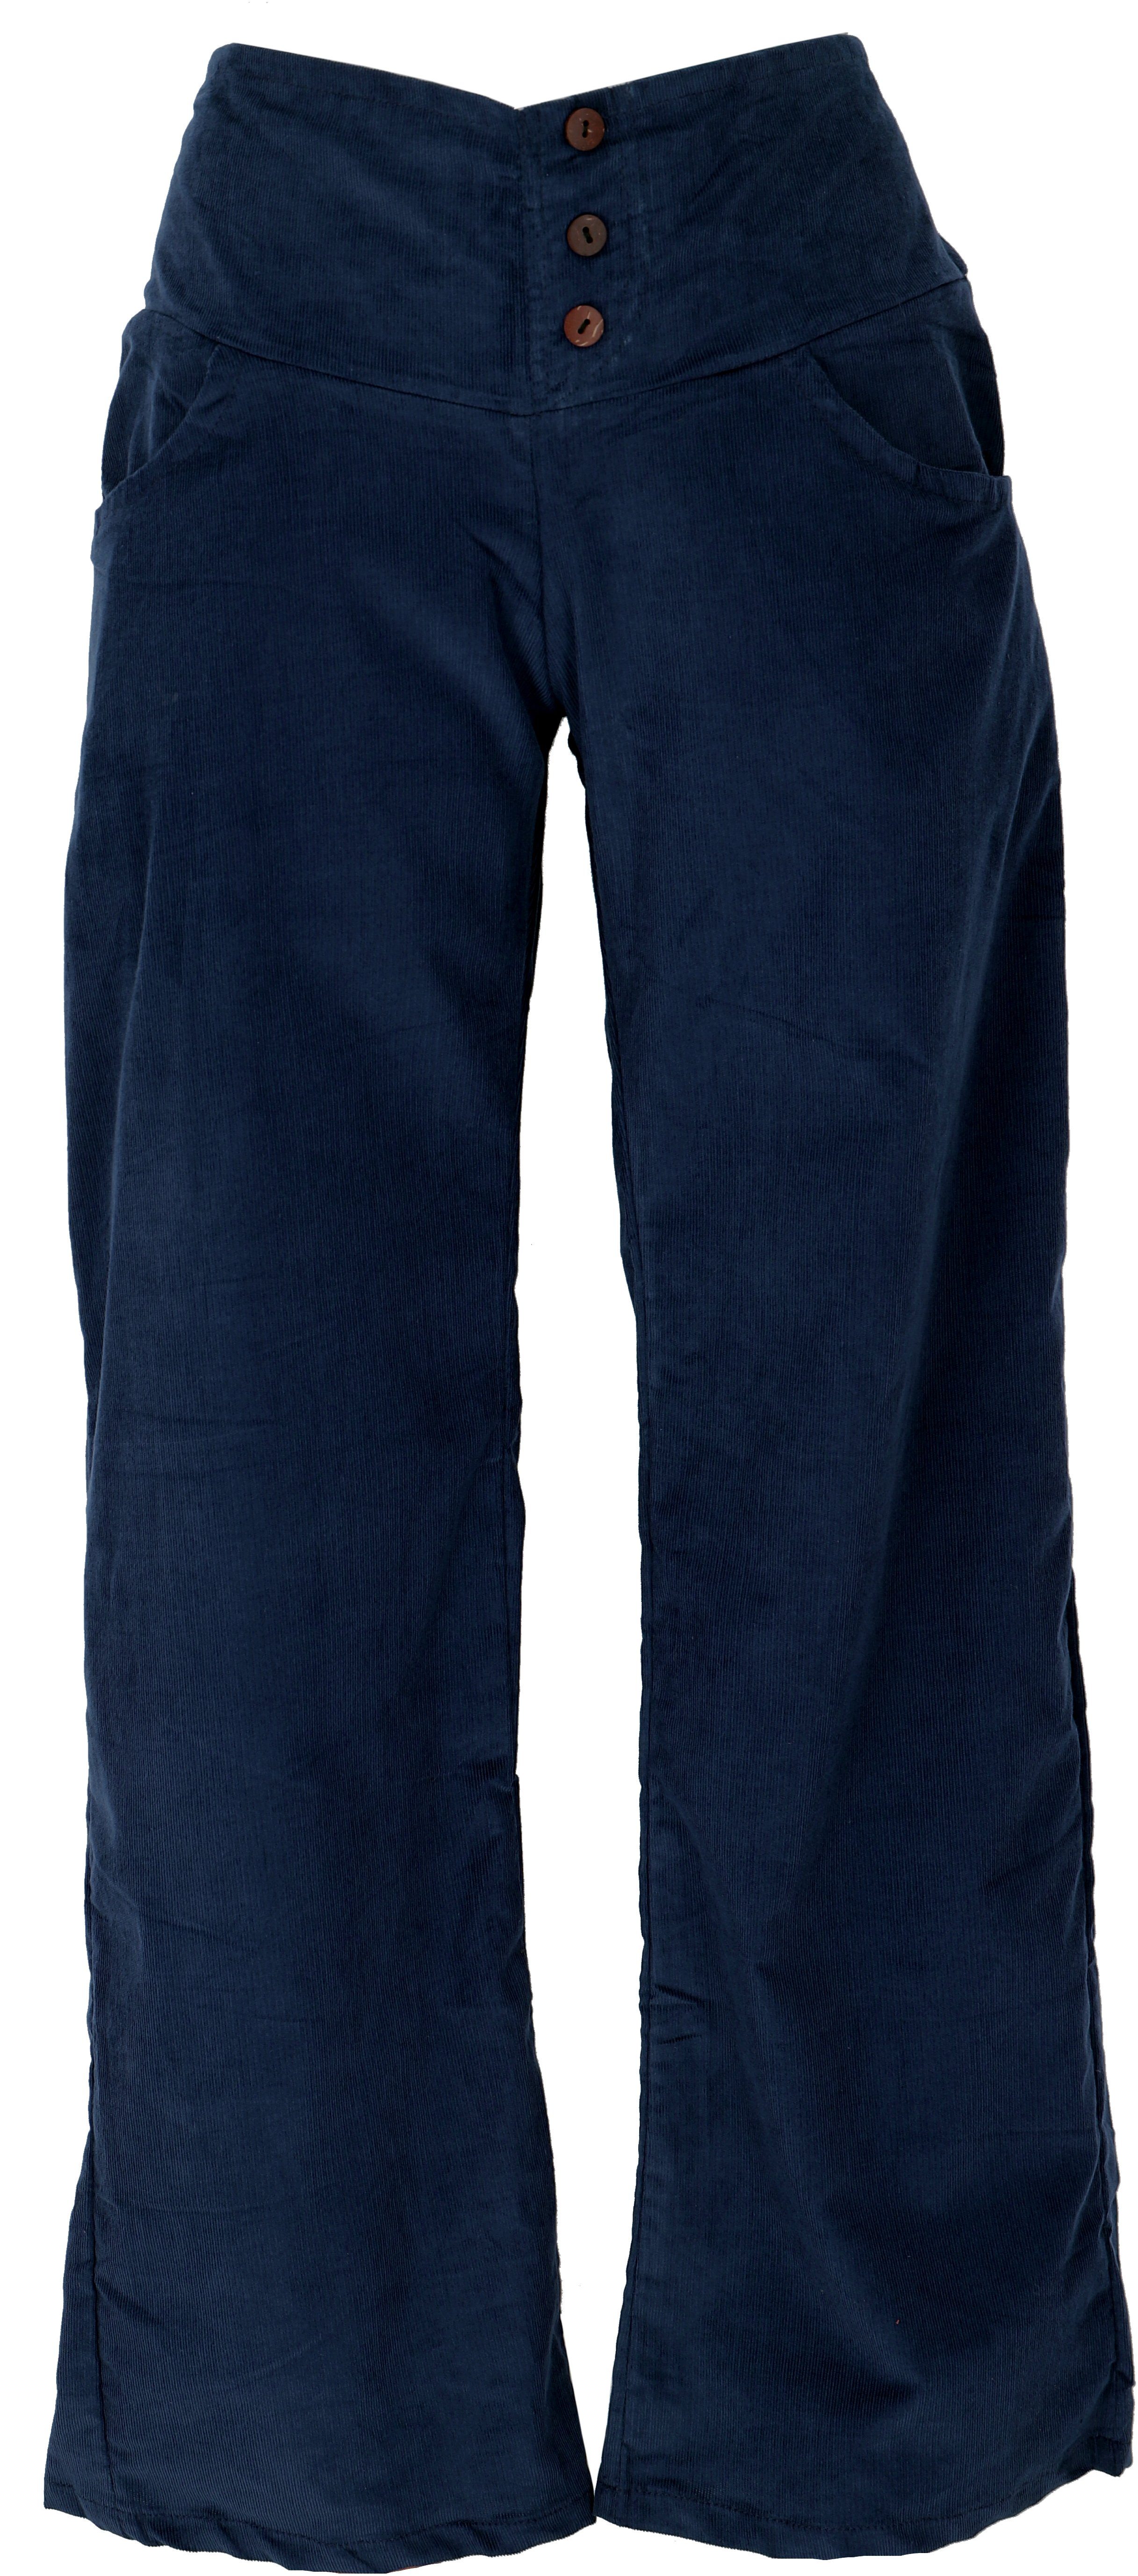 Guru-Shop Relaxhose Cordhose mit Style, leicht Bekleidung Ethno Bein dunkelblau -.. alternative ausgestelltem